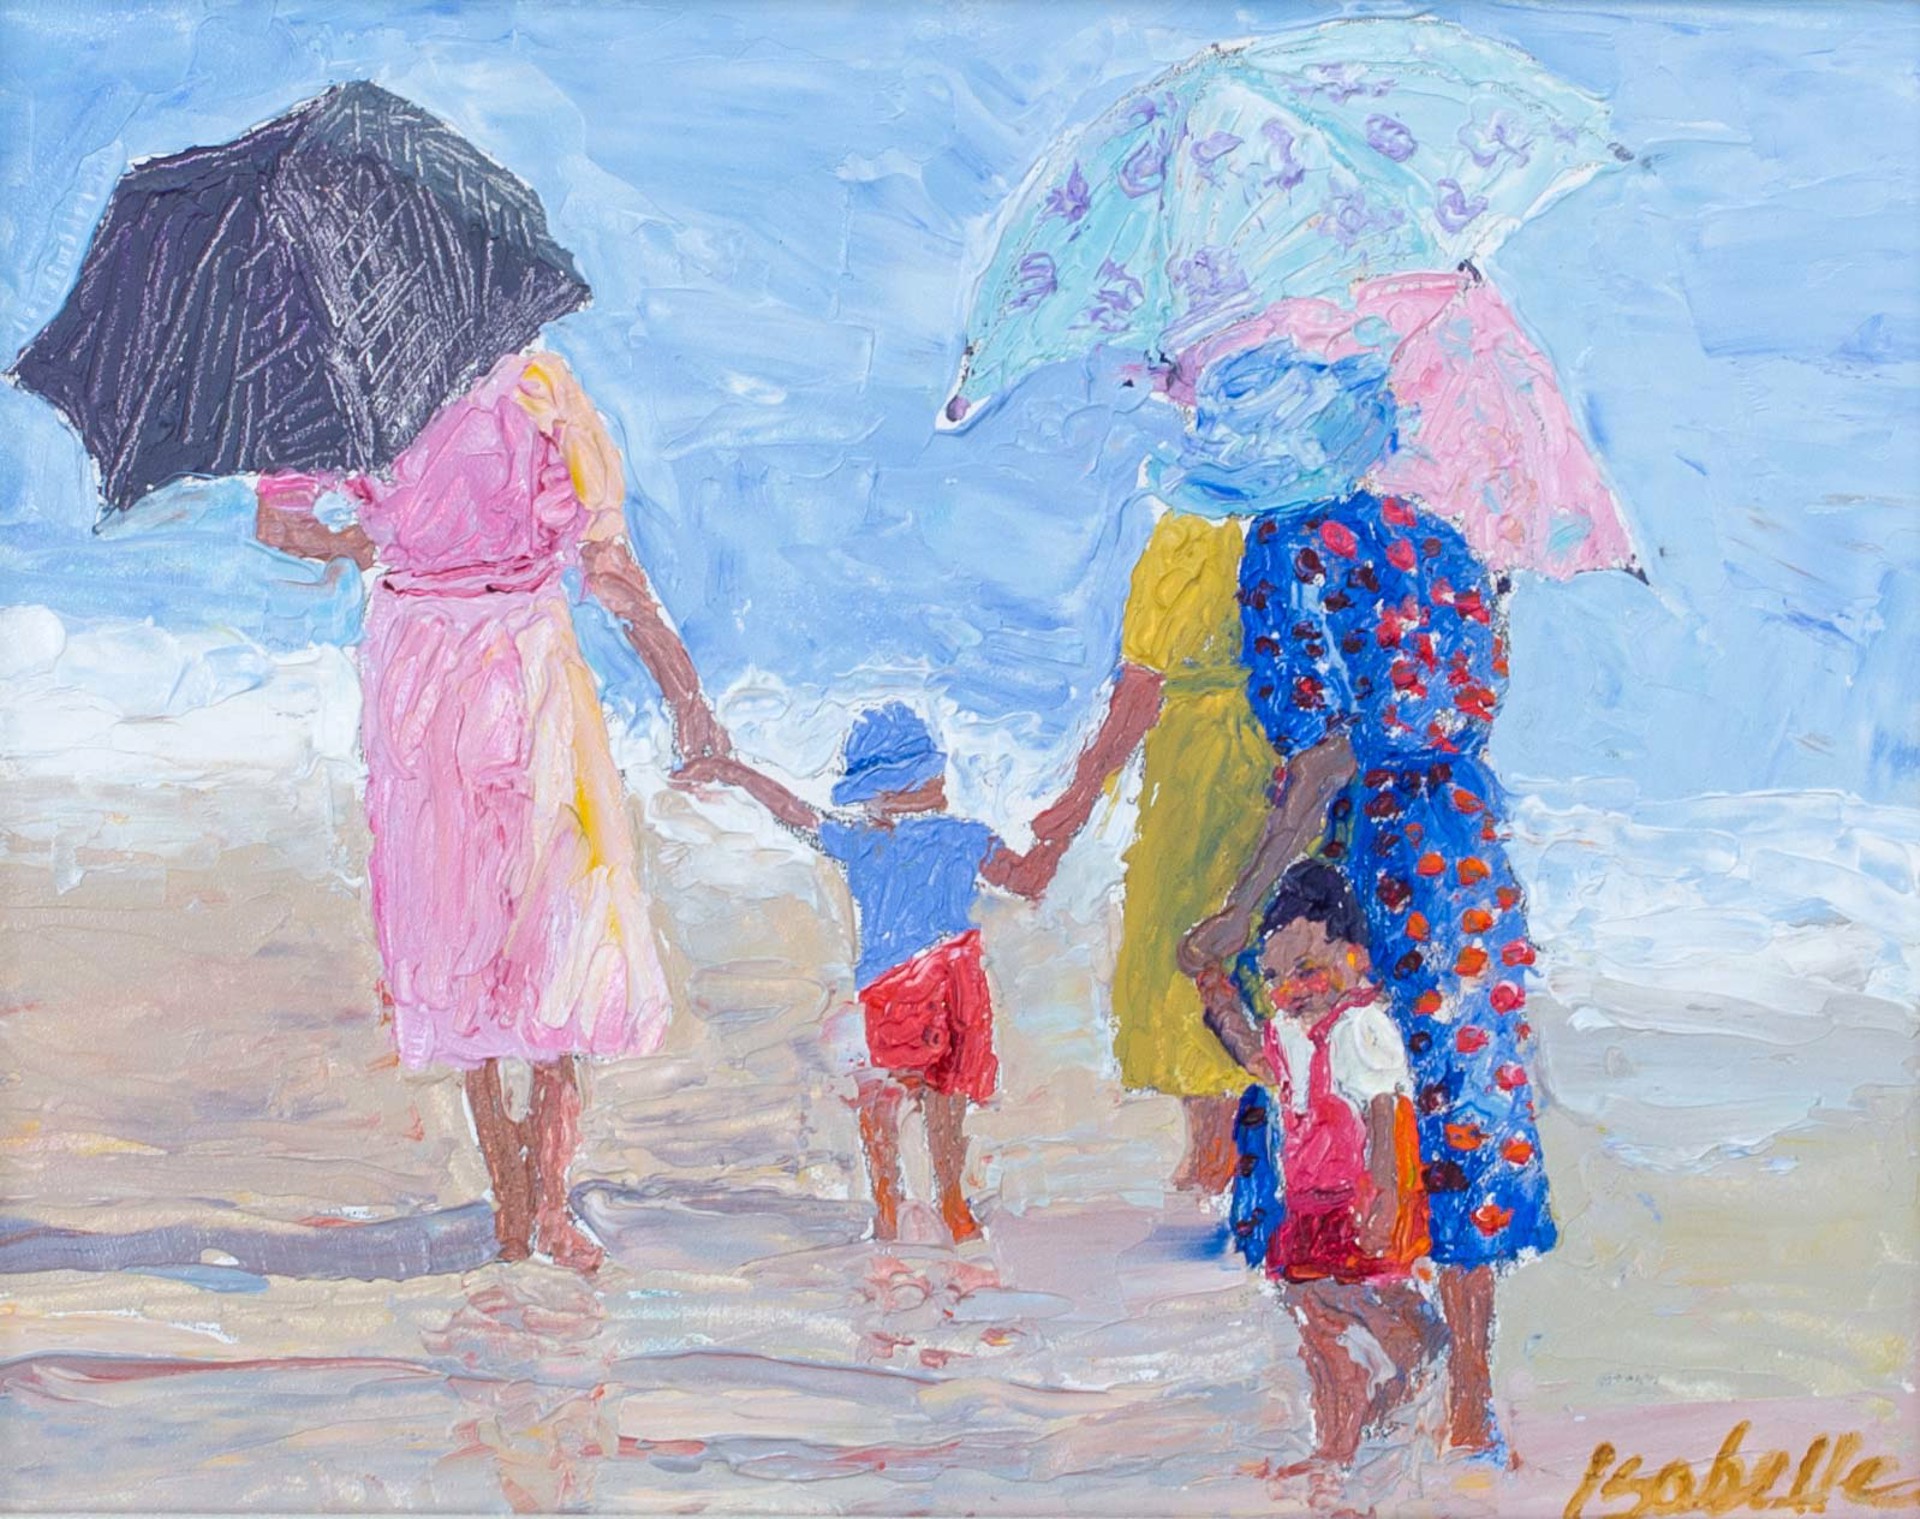 Beach Umbrellas by Isabelle Dayton